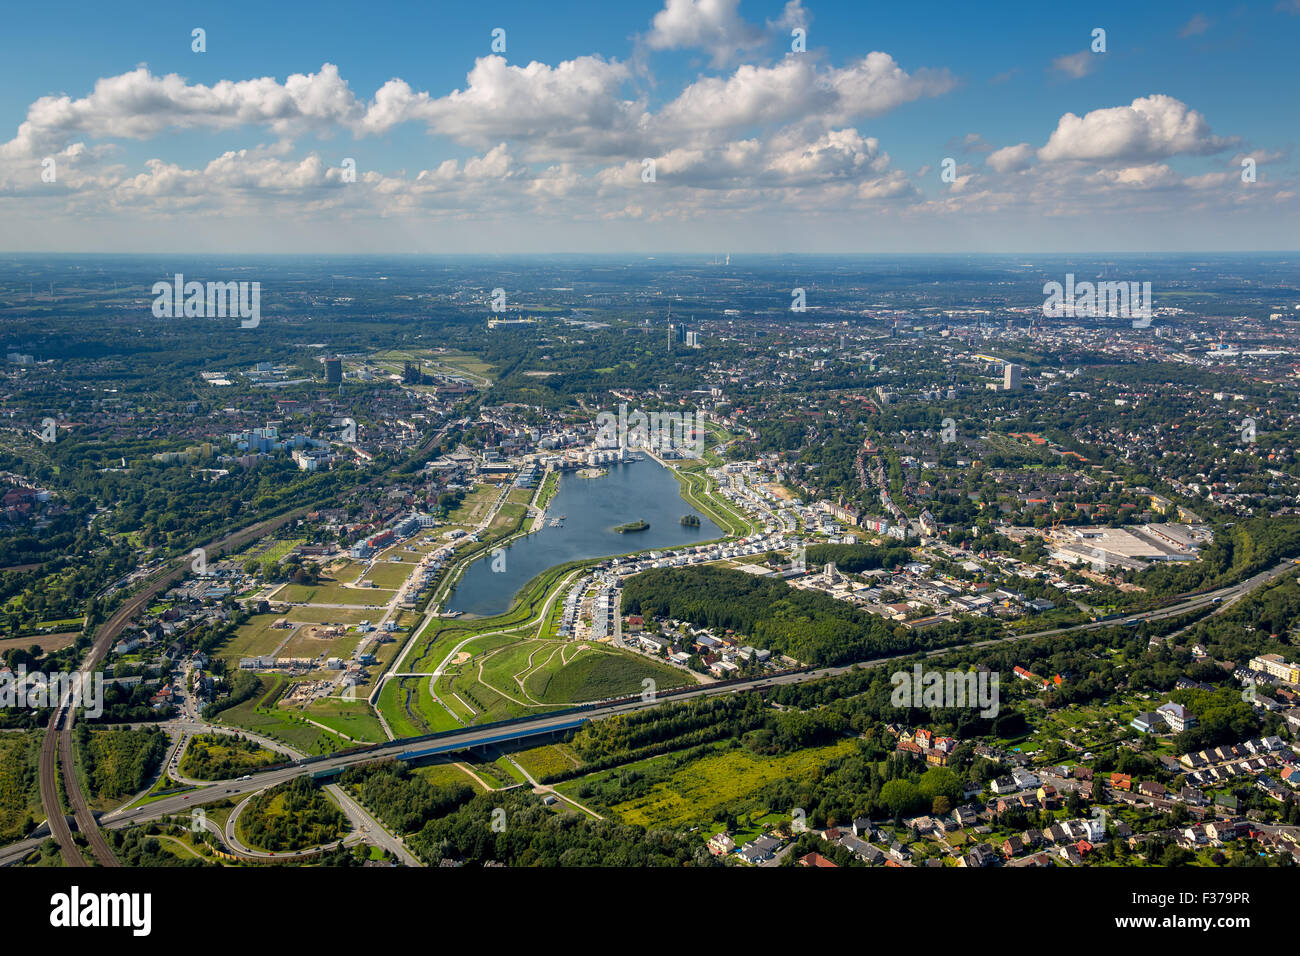 Vista della città con il lago di Phoenix, quartiere di Dortmund - Hoerde, distretto della Ruhr, Nord Reno-Westfalia, Germania Foto Stock